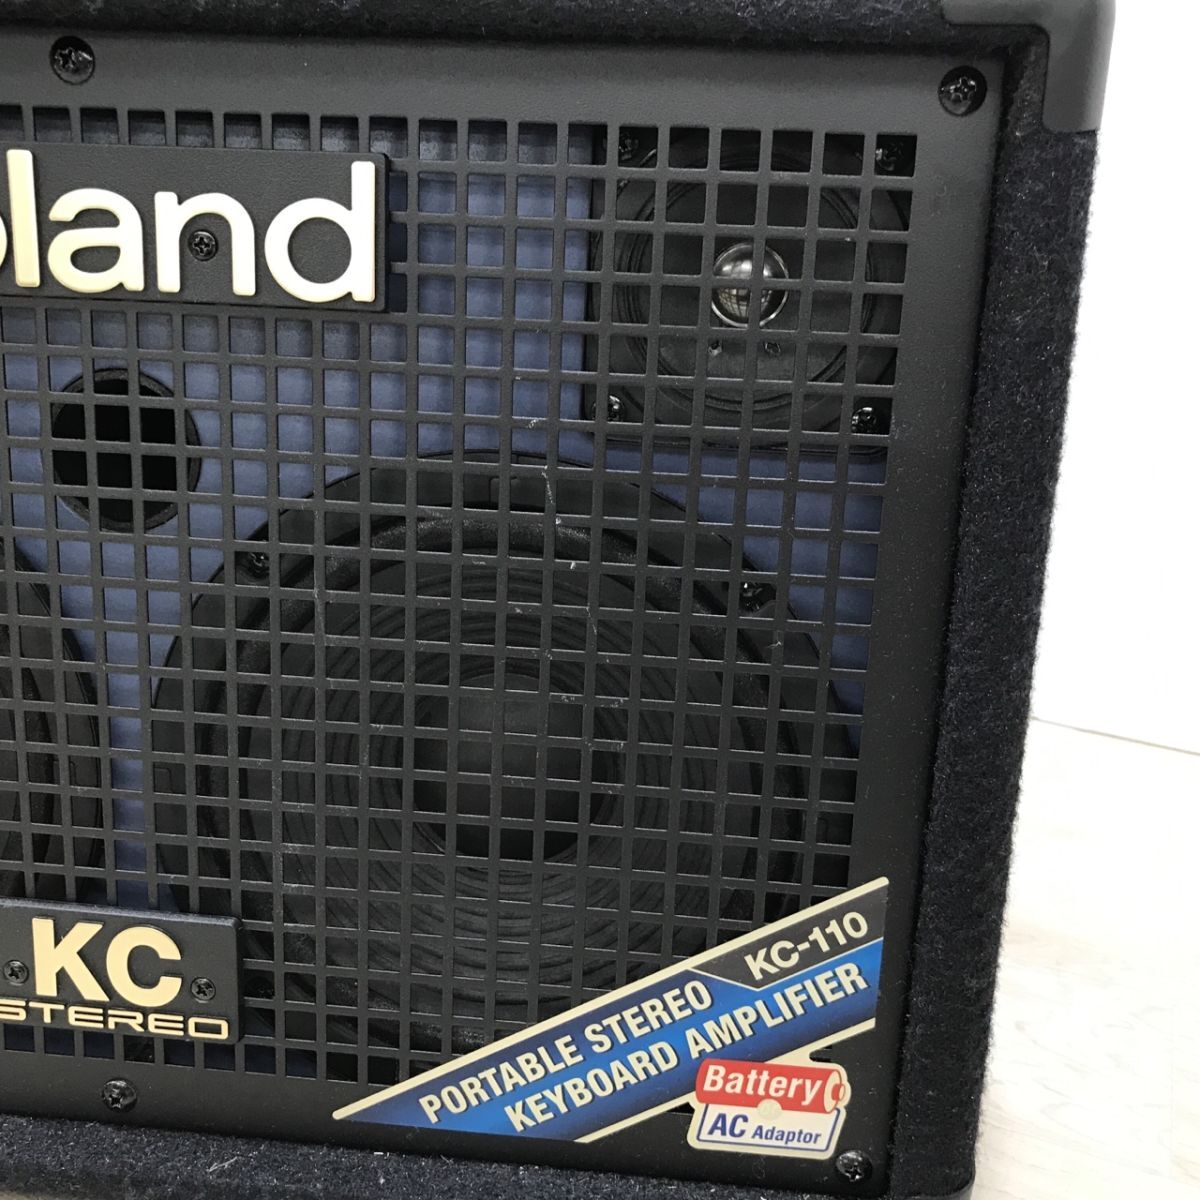 ROLAND Roland стерео клавиатура усилитель KC-110 батарейка box отсутствует [C4155]